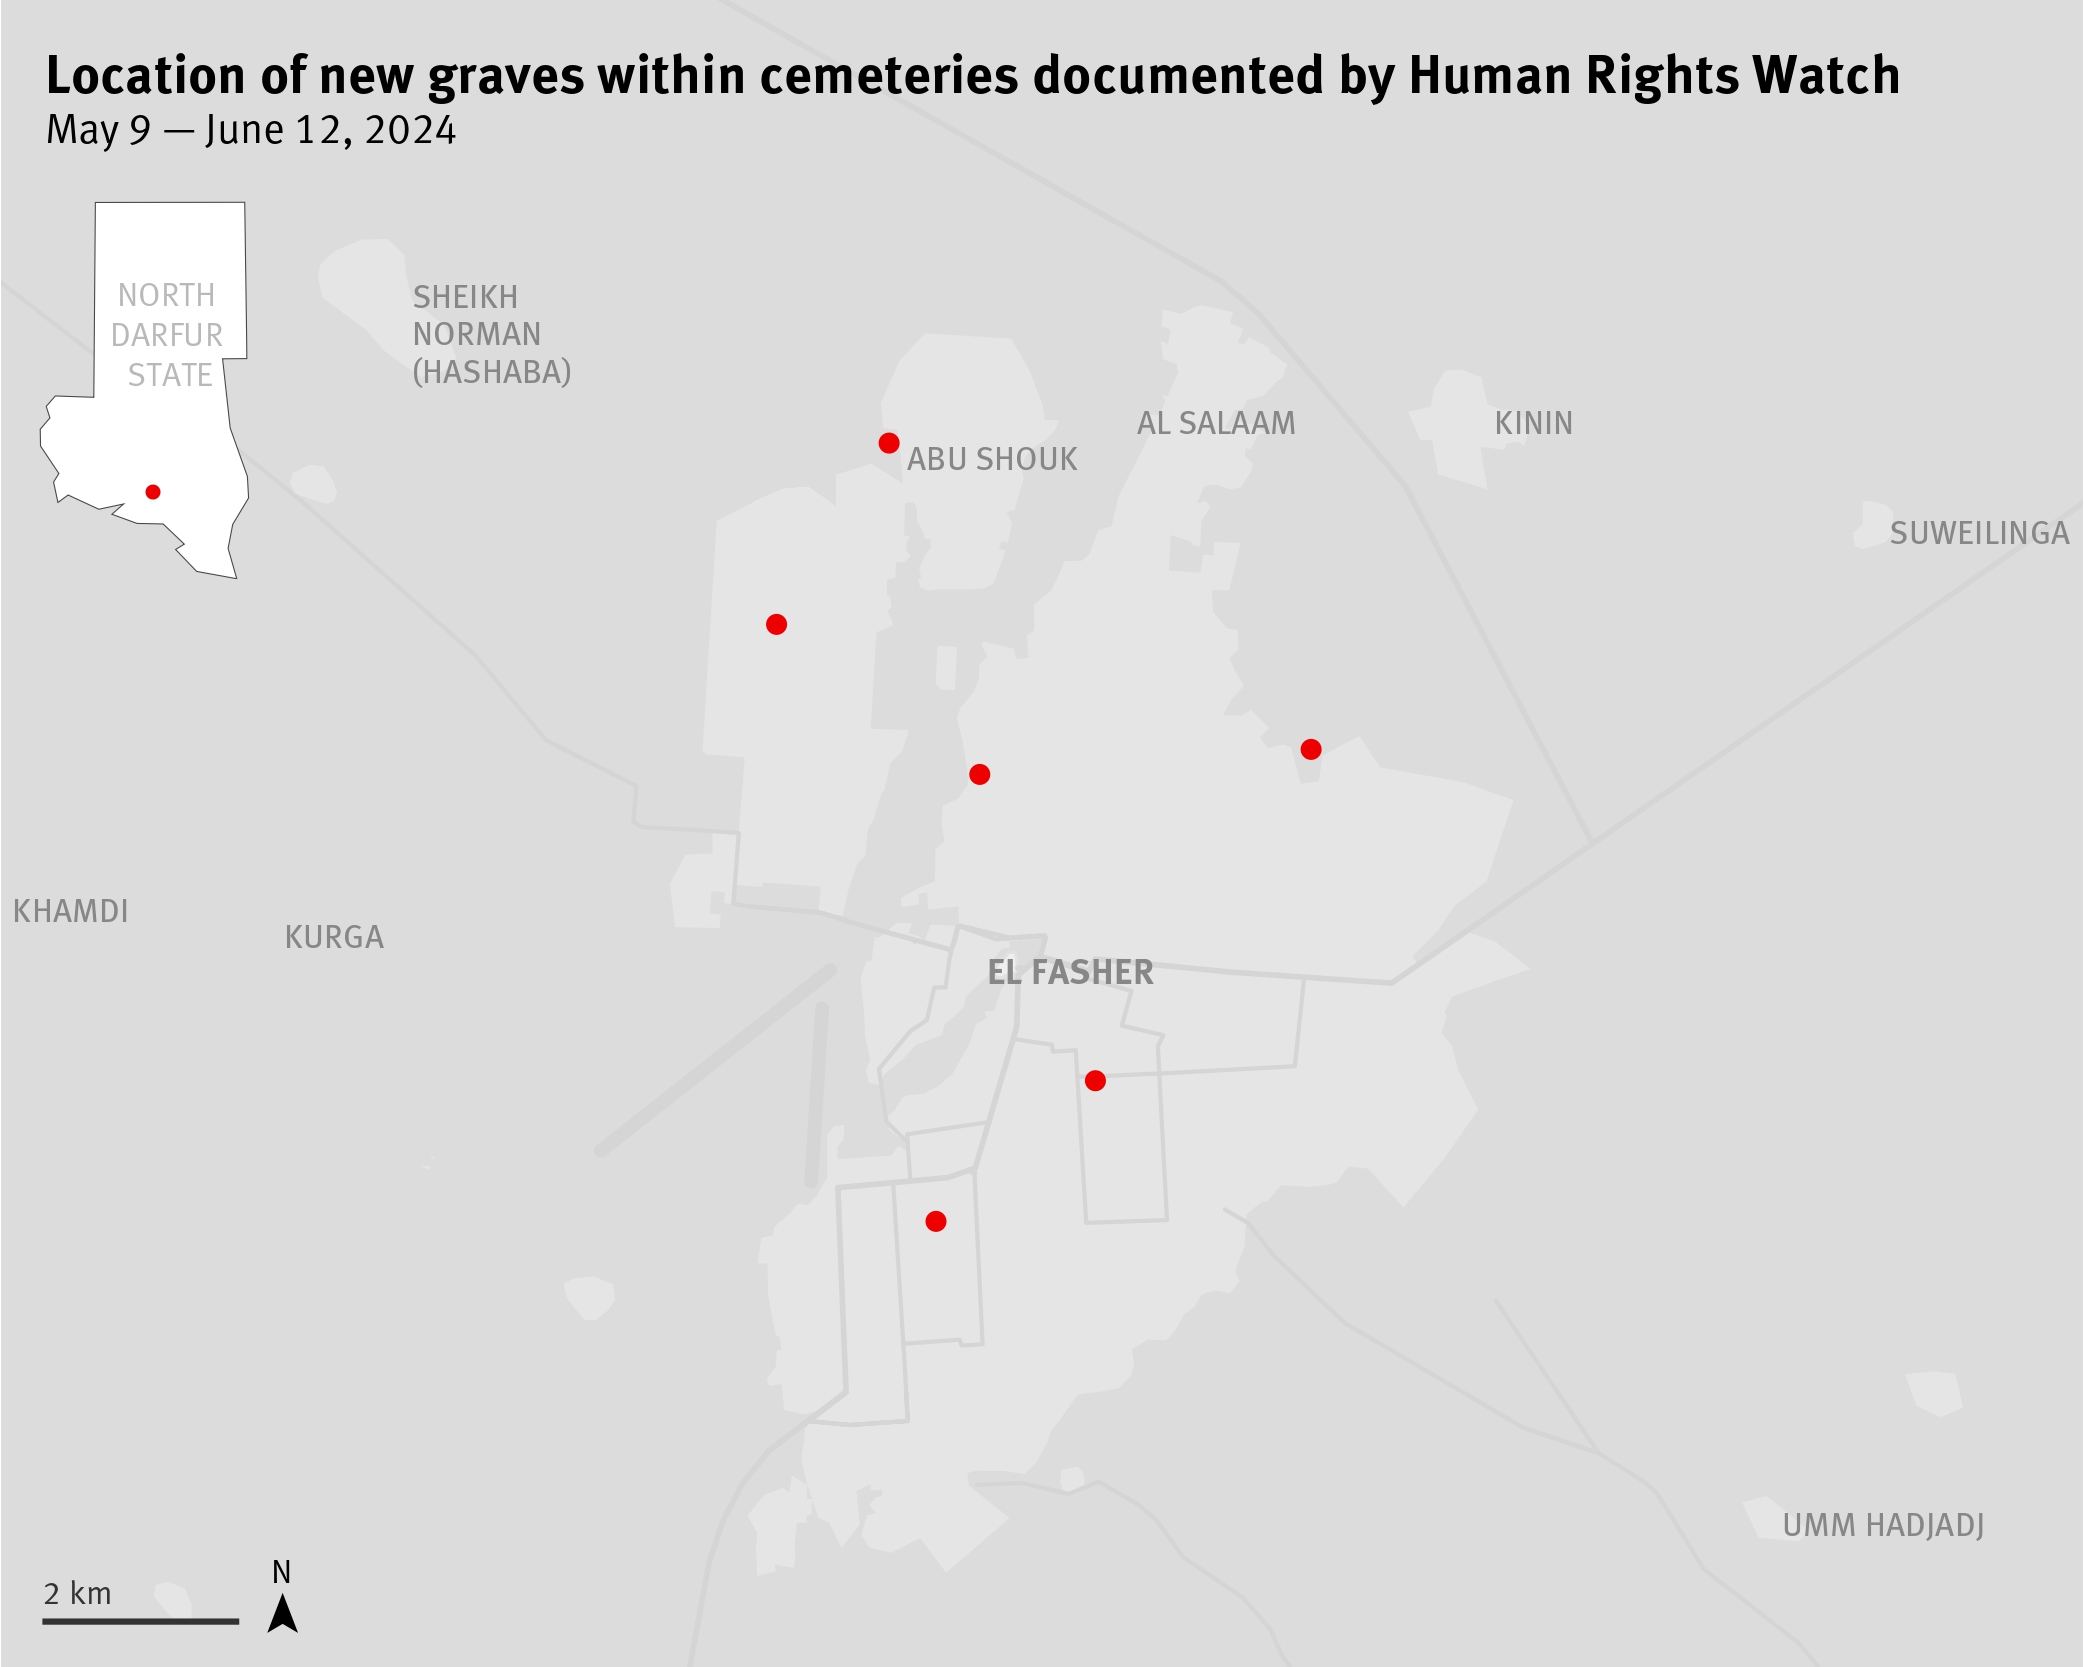 Emplacement de cimetières (points rouges) dans lesquels une hausse notable du nombre de tombes a pu être décelée par Human Rights Watch via une analyse d’images satellite entre le 9 mai et le 12 juin 2024.